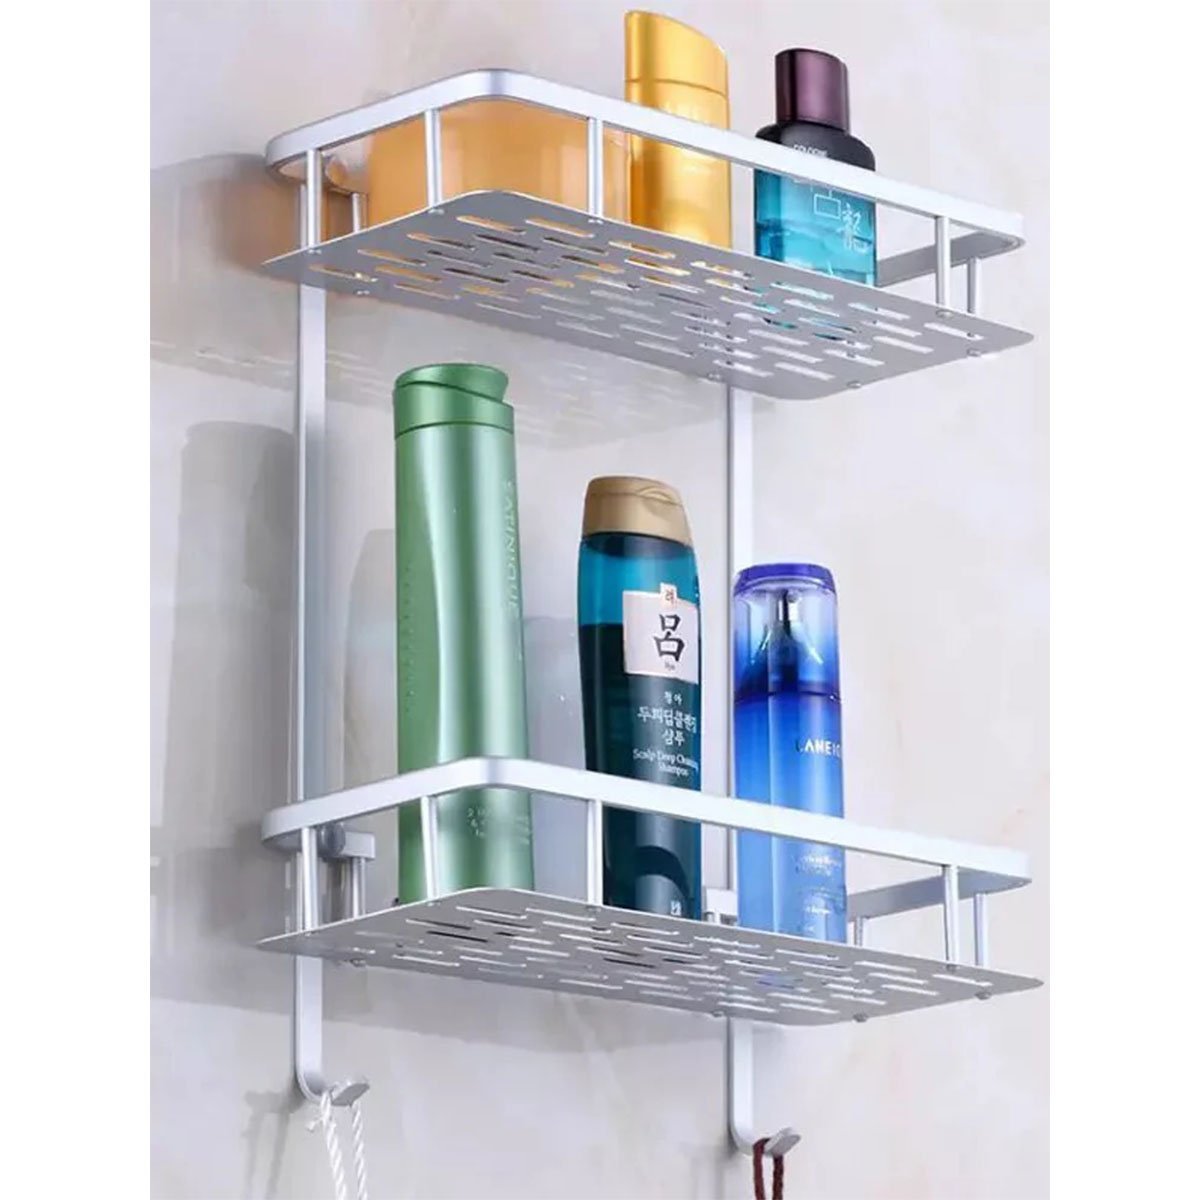 Suporte Organizador Porta Shampoo Condicionador Sabonete Prateleira Dupla Box Banheiro Aluminio Ab.m - 6